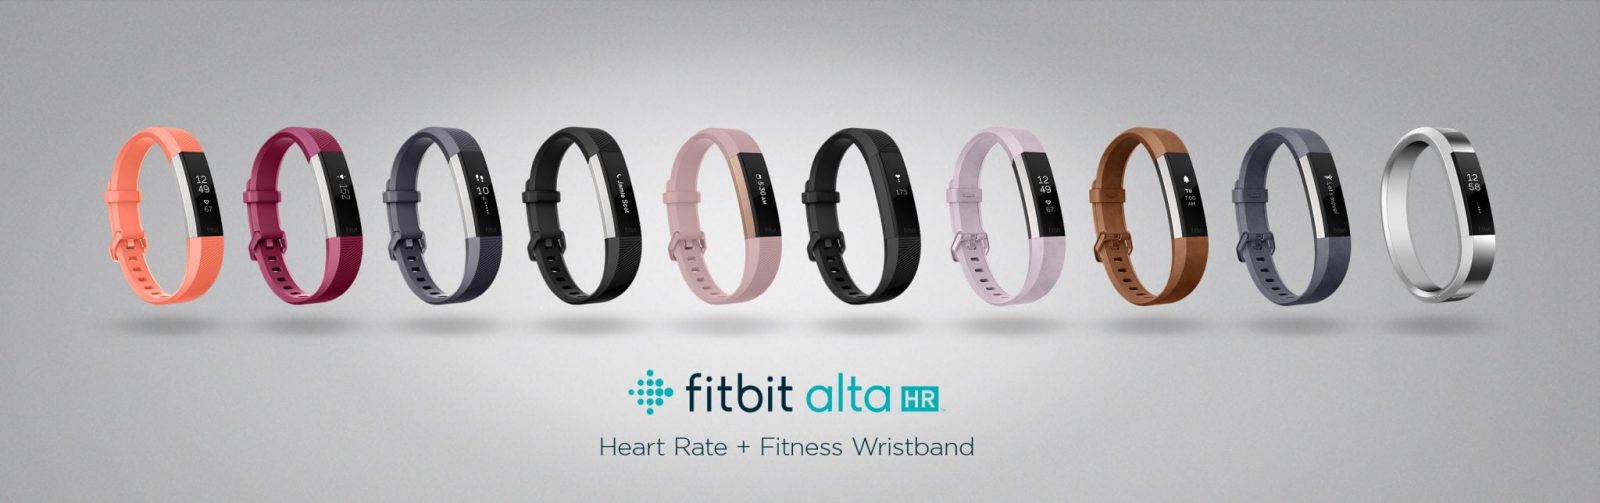 Fitbit presenta Alta HR, il braccialetto più sottile al mondo con rilevazione continua del battito cardiaco 1